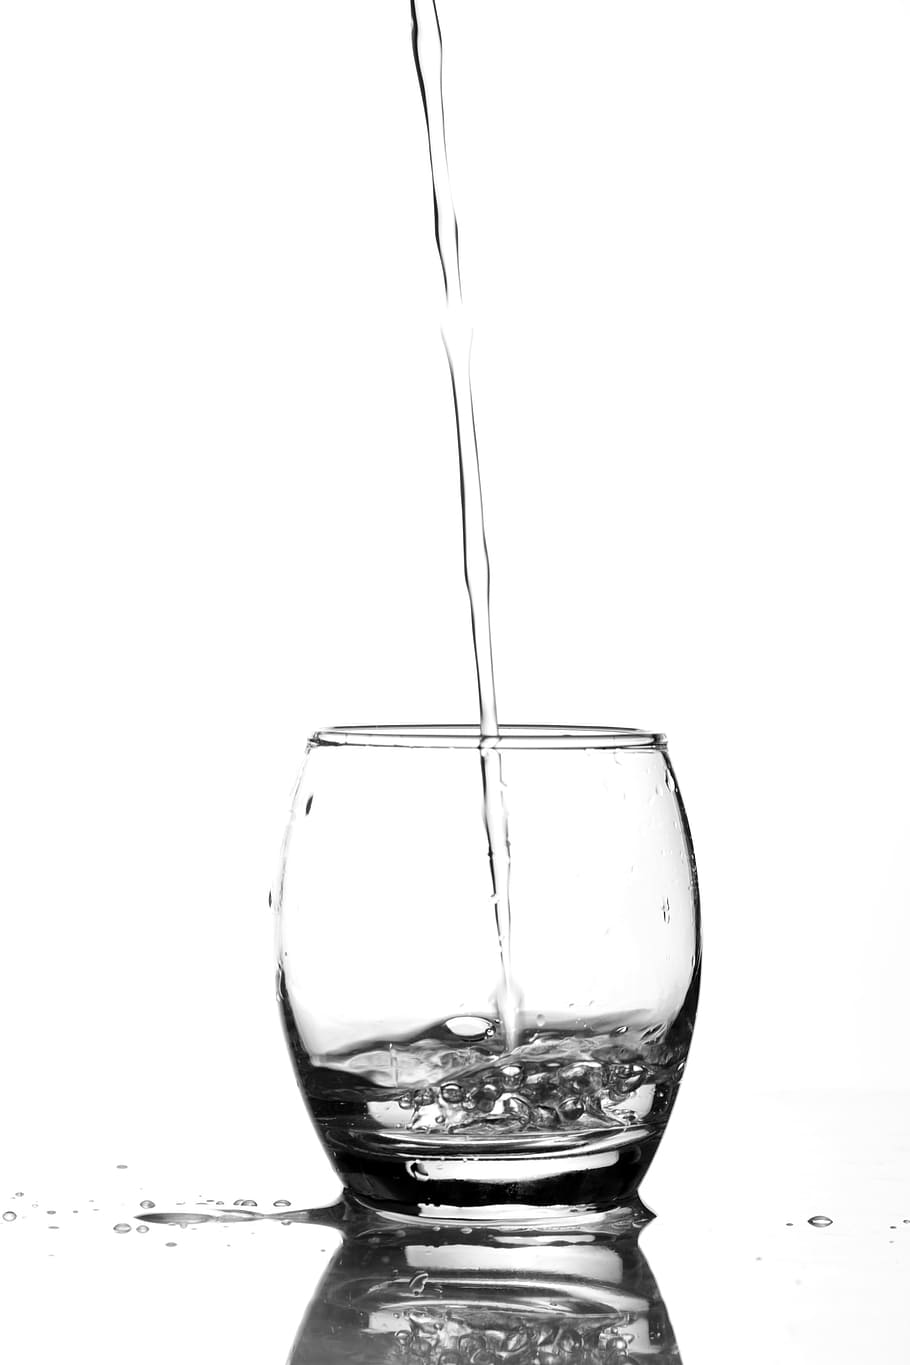 vaso, agua, bebida, frío, refrescante, Foto de estudio, vidrio, transparente, comida y bebida, fondo blanco